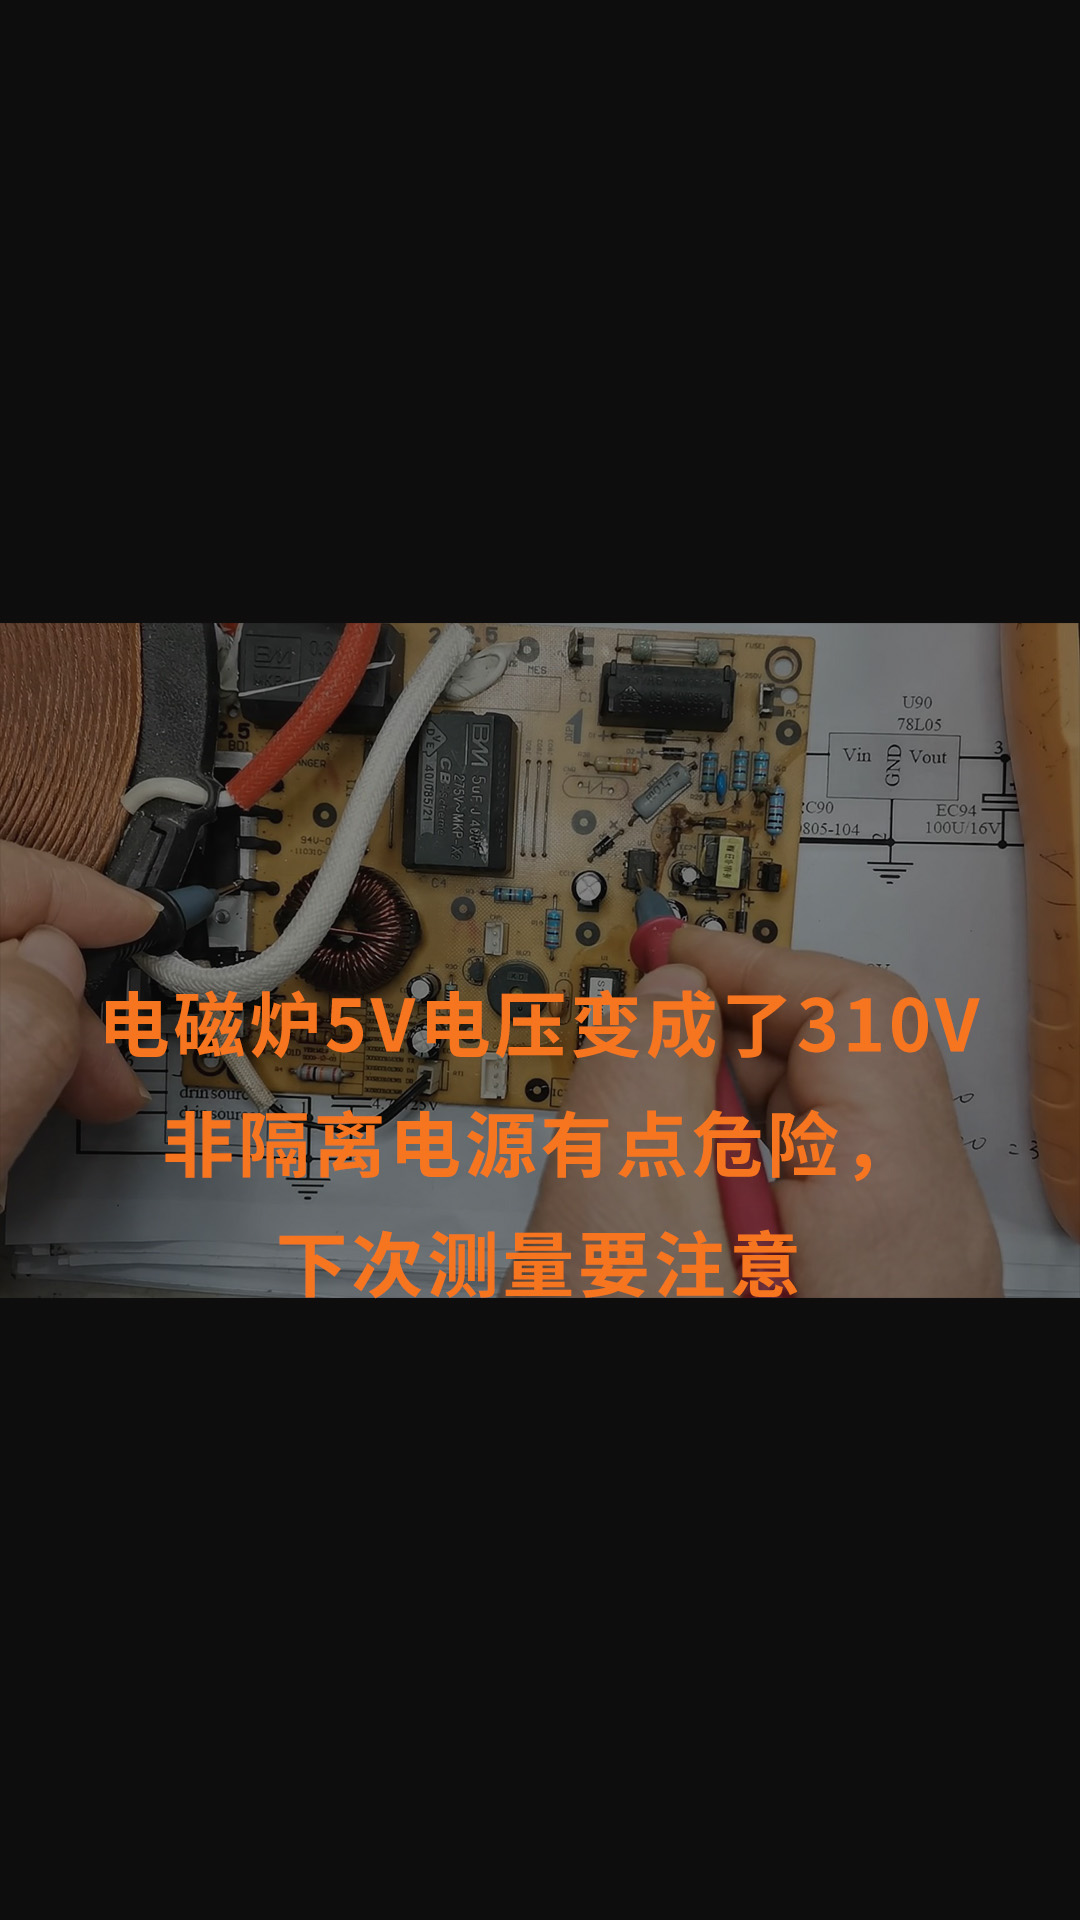 电磁炉5V电压变成了310V非隔离电源有点危险，下次测量要注意